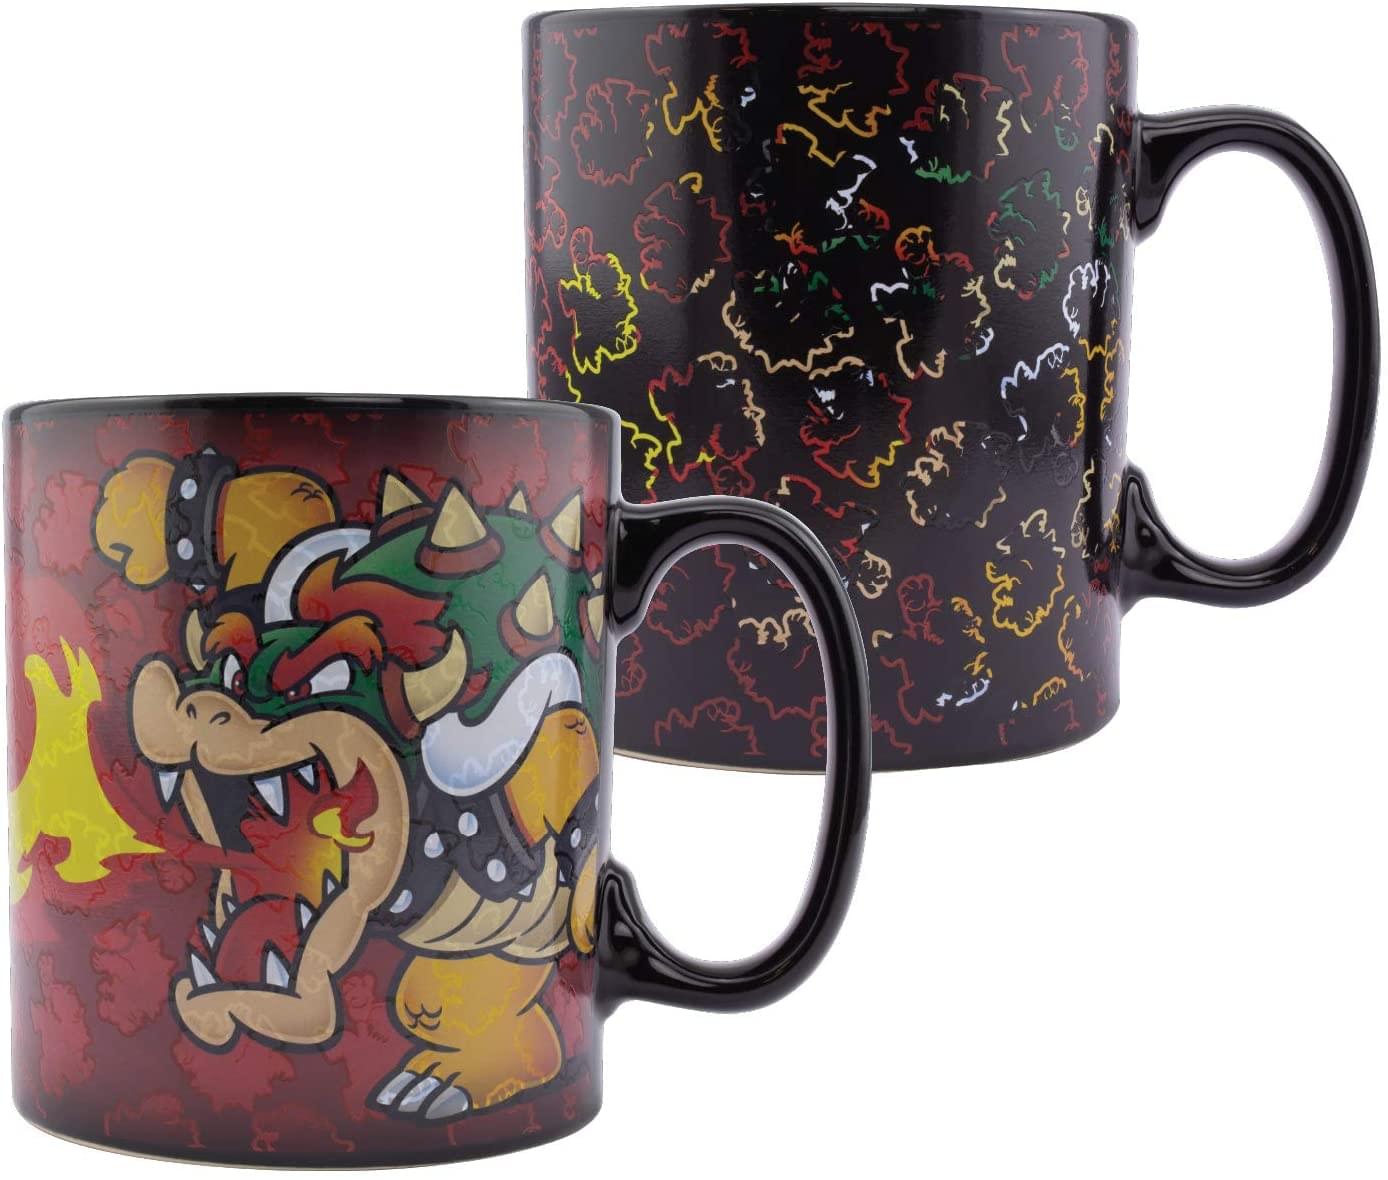 Super Mario Bowser Oversized 18.5oz Heat Change Ceramic Mug